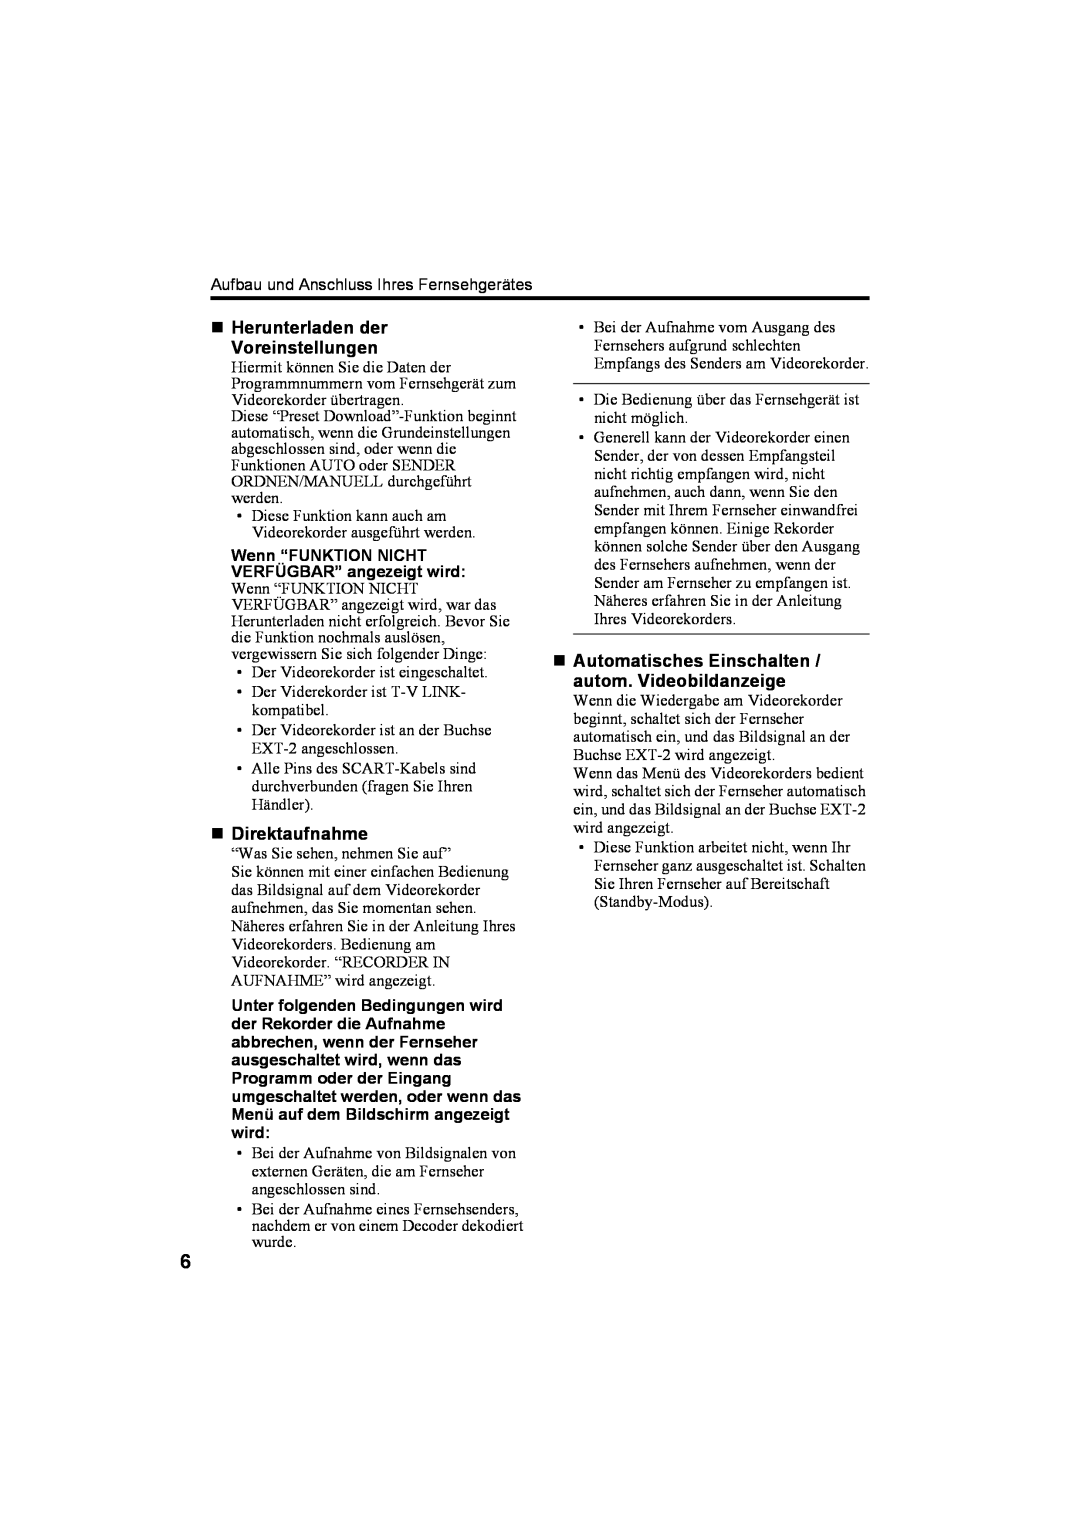 JVC AV28T20EP, AV32T20EP manual „ Herunterladen der Voreinstellungen, „ Direktaufnahme 